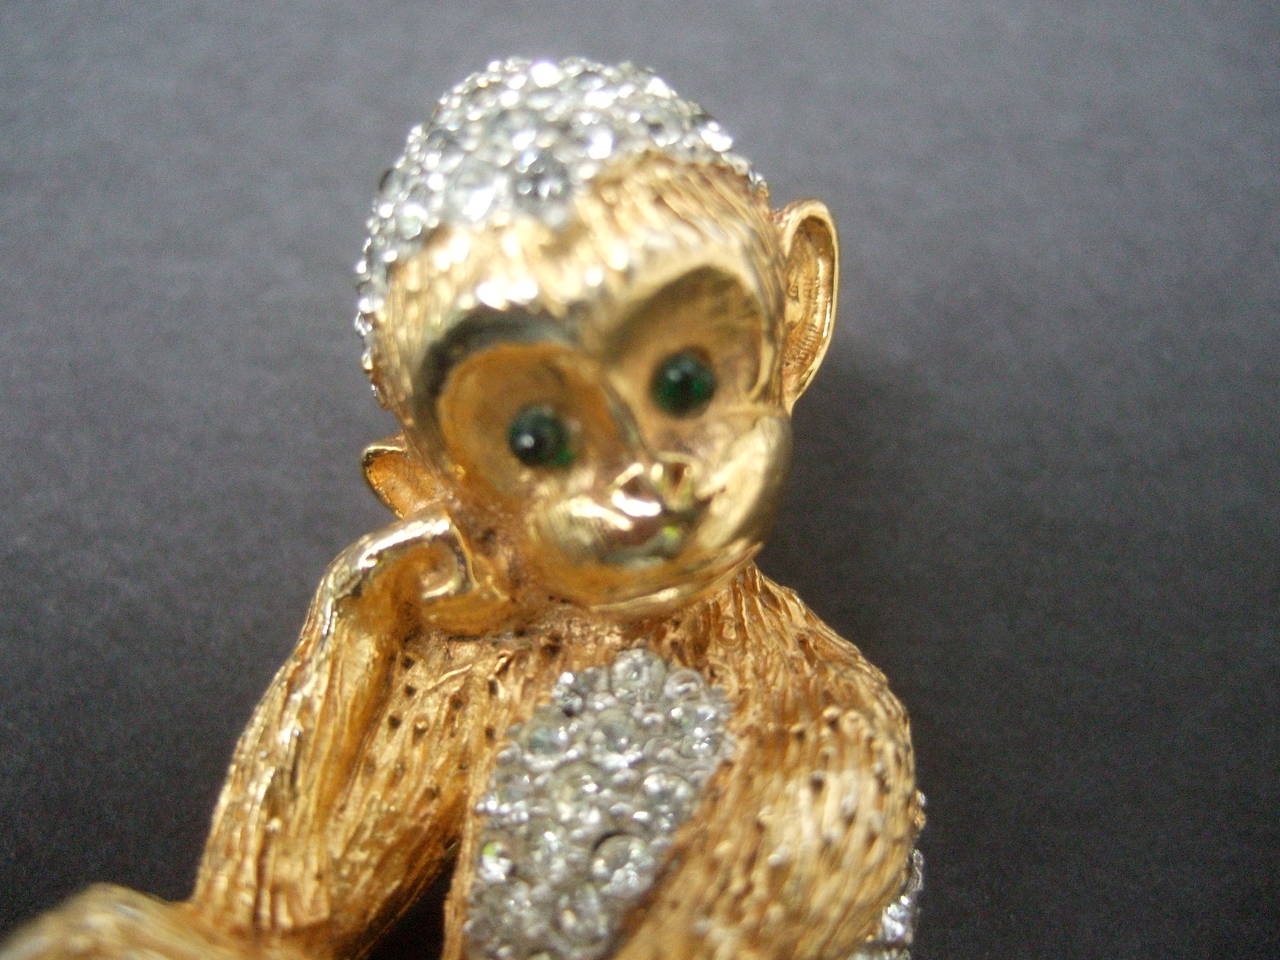 the jeweled monkey